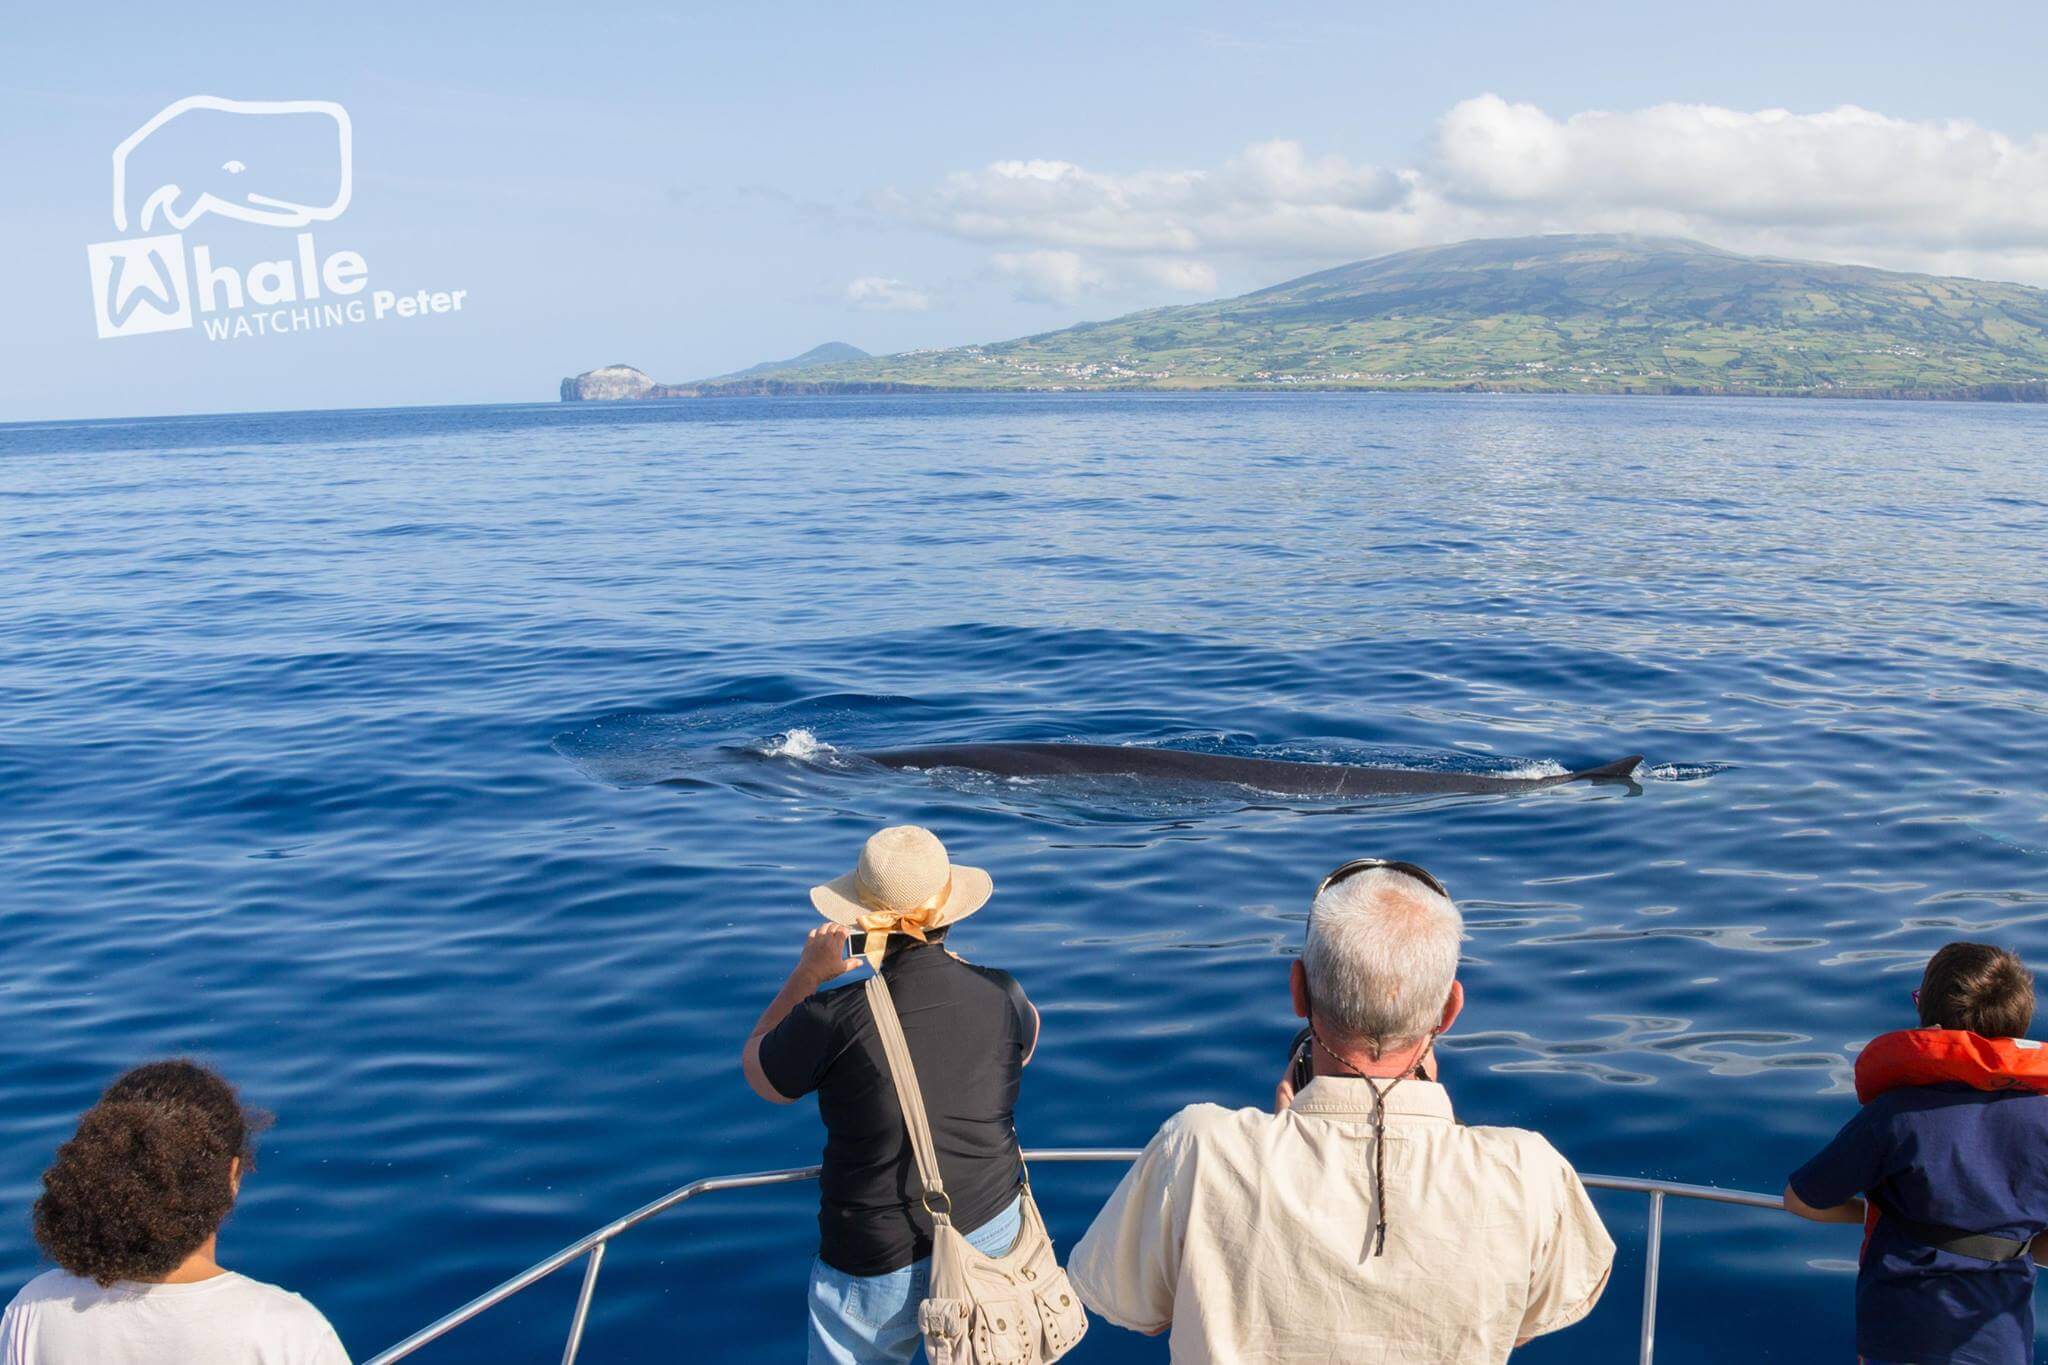  Fotografia de golfinhos e baleias durante a atividade de whale watching com o peter cafe sport 